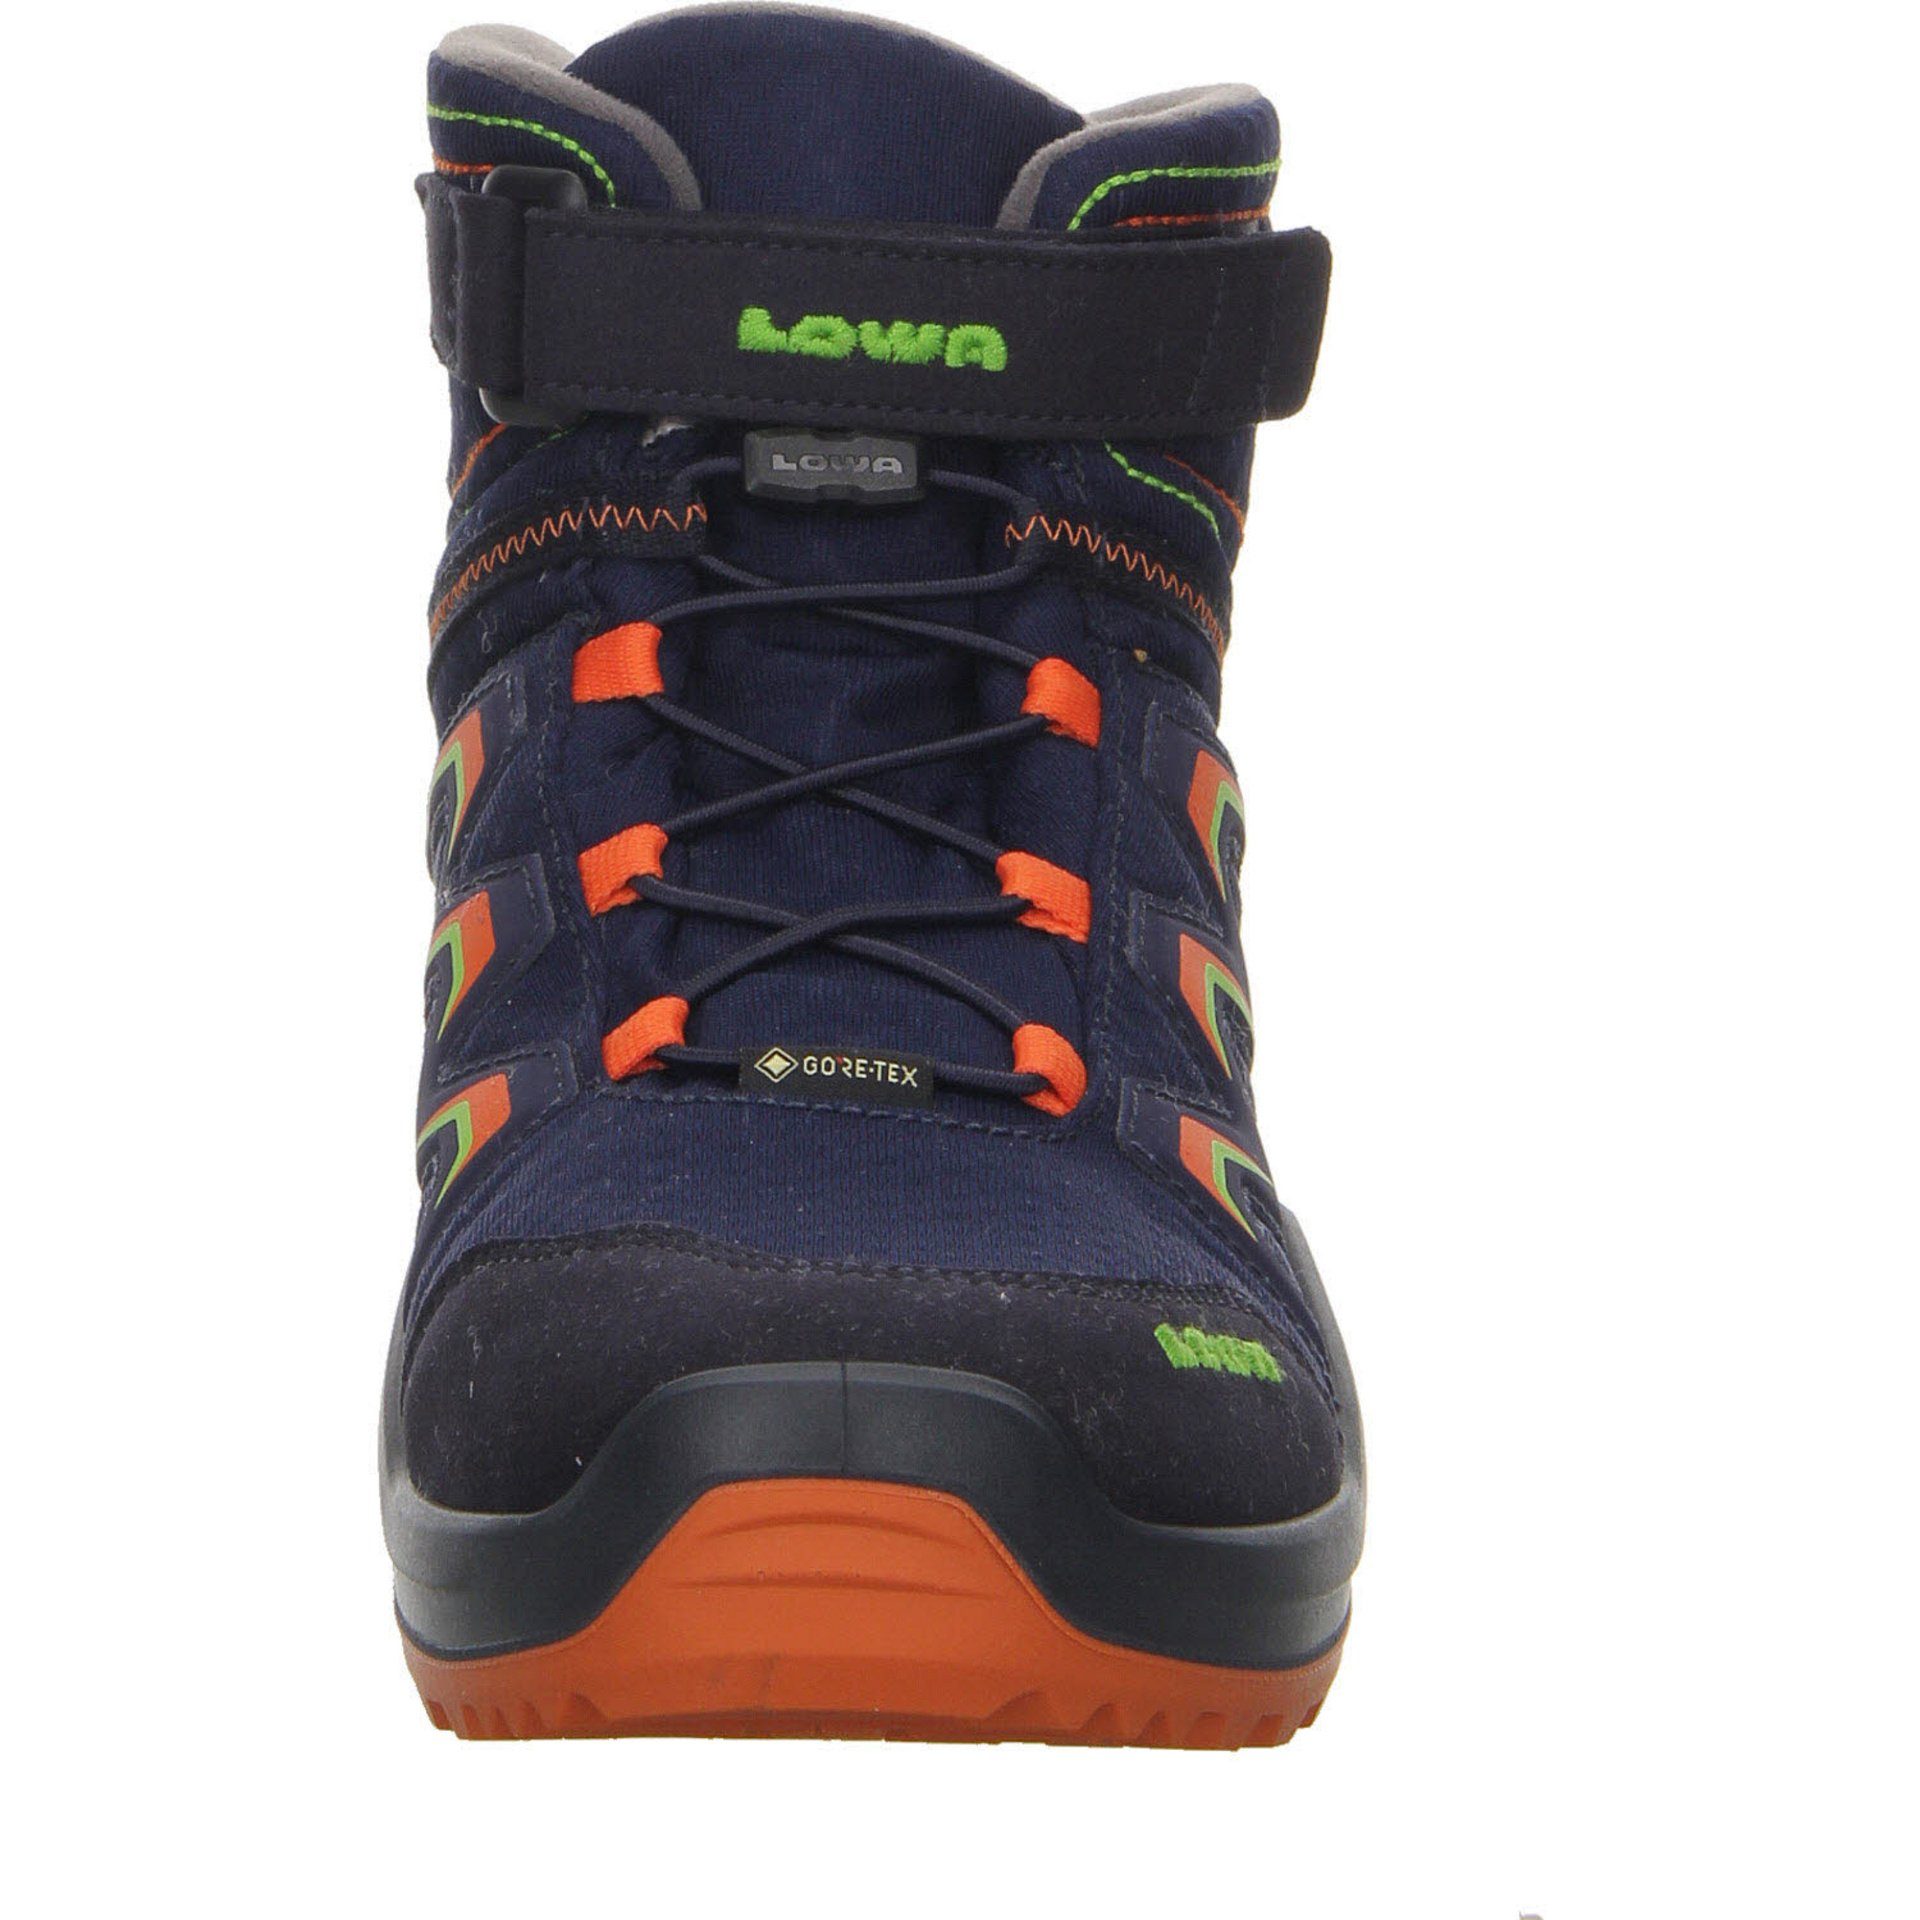 navy/orange Textil Schuhe Stiefel Maddox Lowa Jungen Stiefel Boots GTX Warm